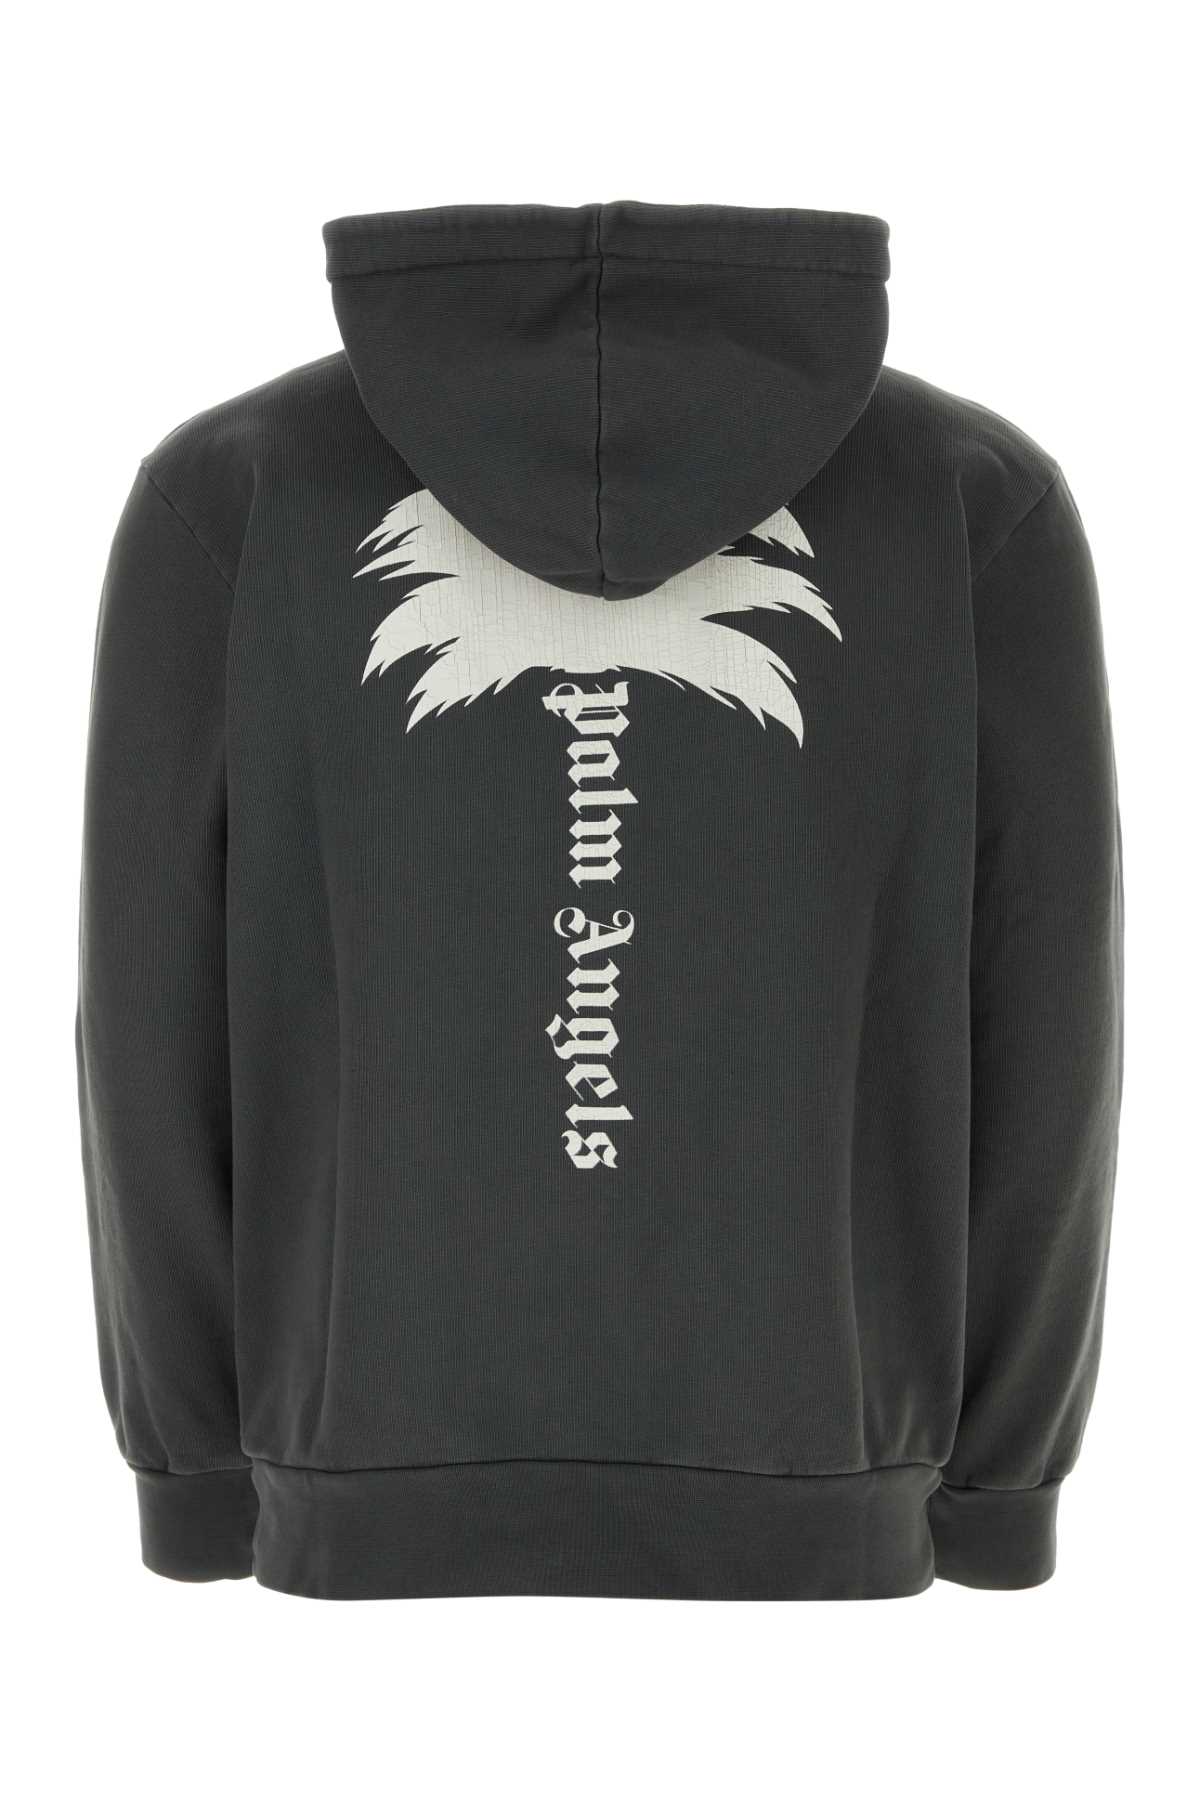 Palm Angels Dark Grey Cotton Sweatshirt In Darkgrey